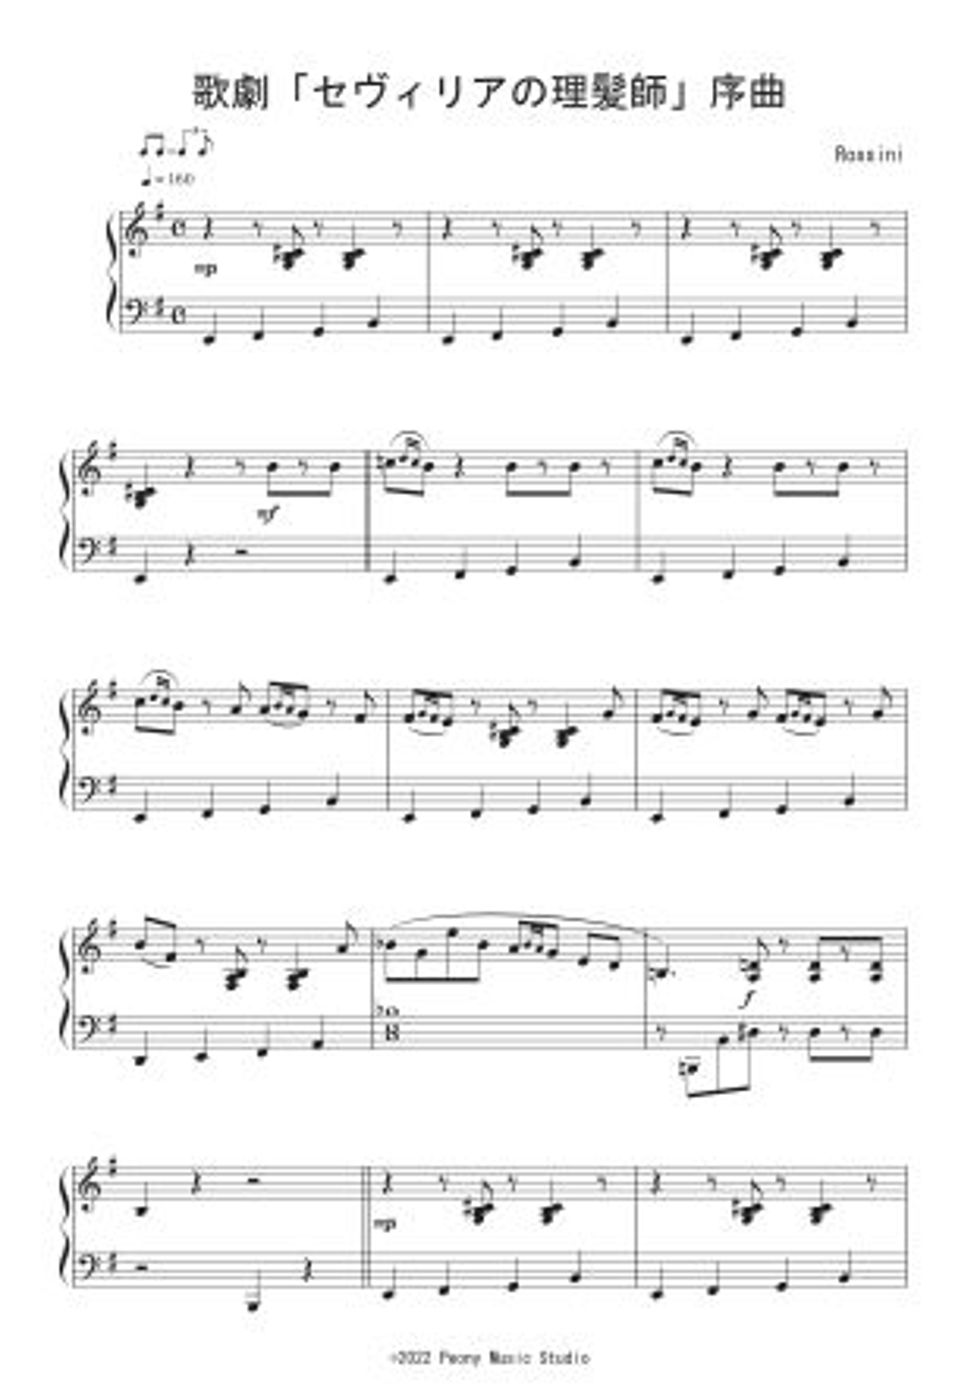 ロッシーニ - 歌劇「セヴィリアの理髪師」序曲 (Jazz Ver.) by Peony